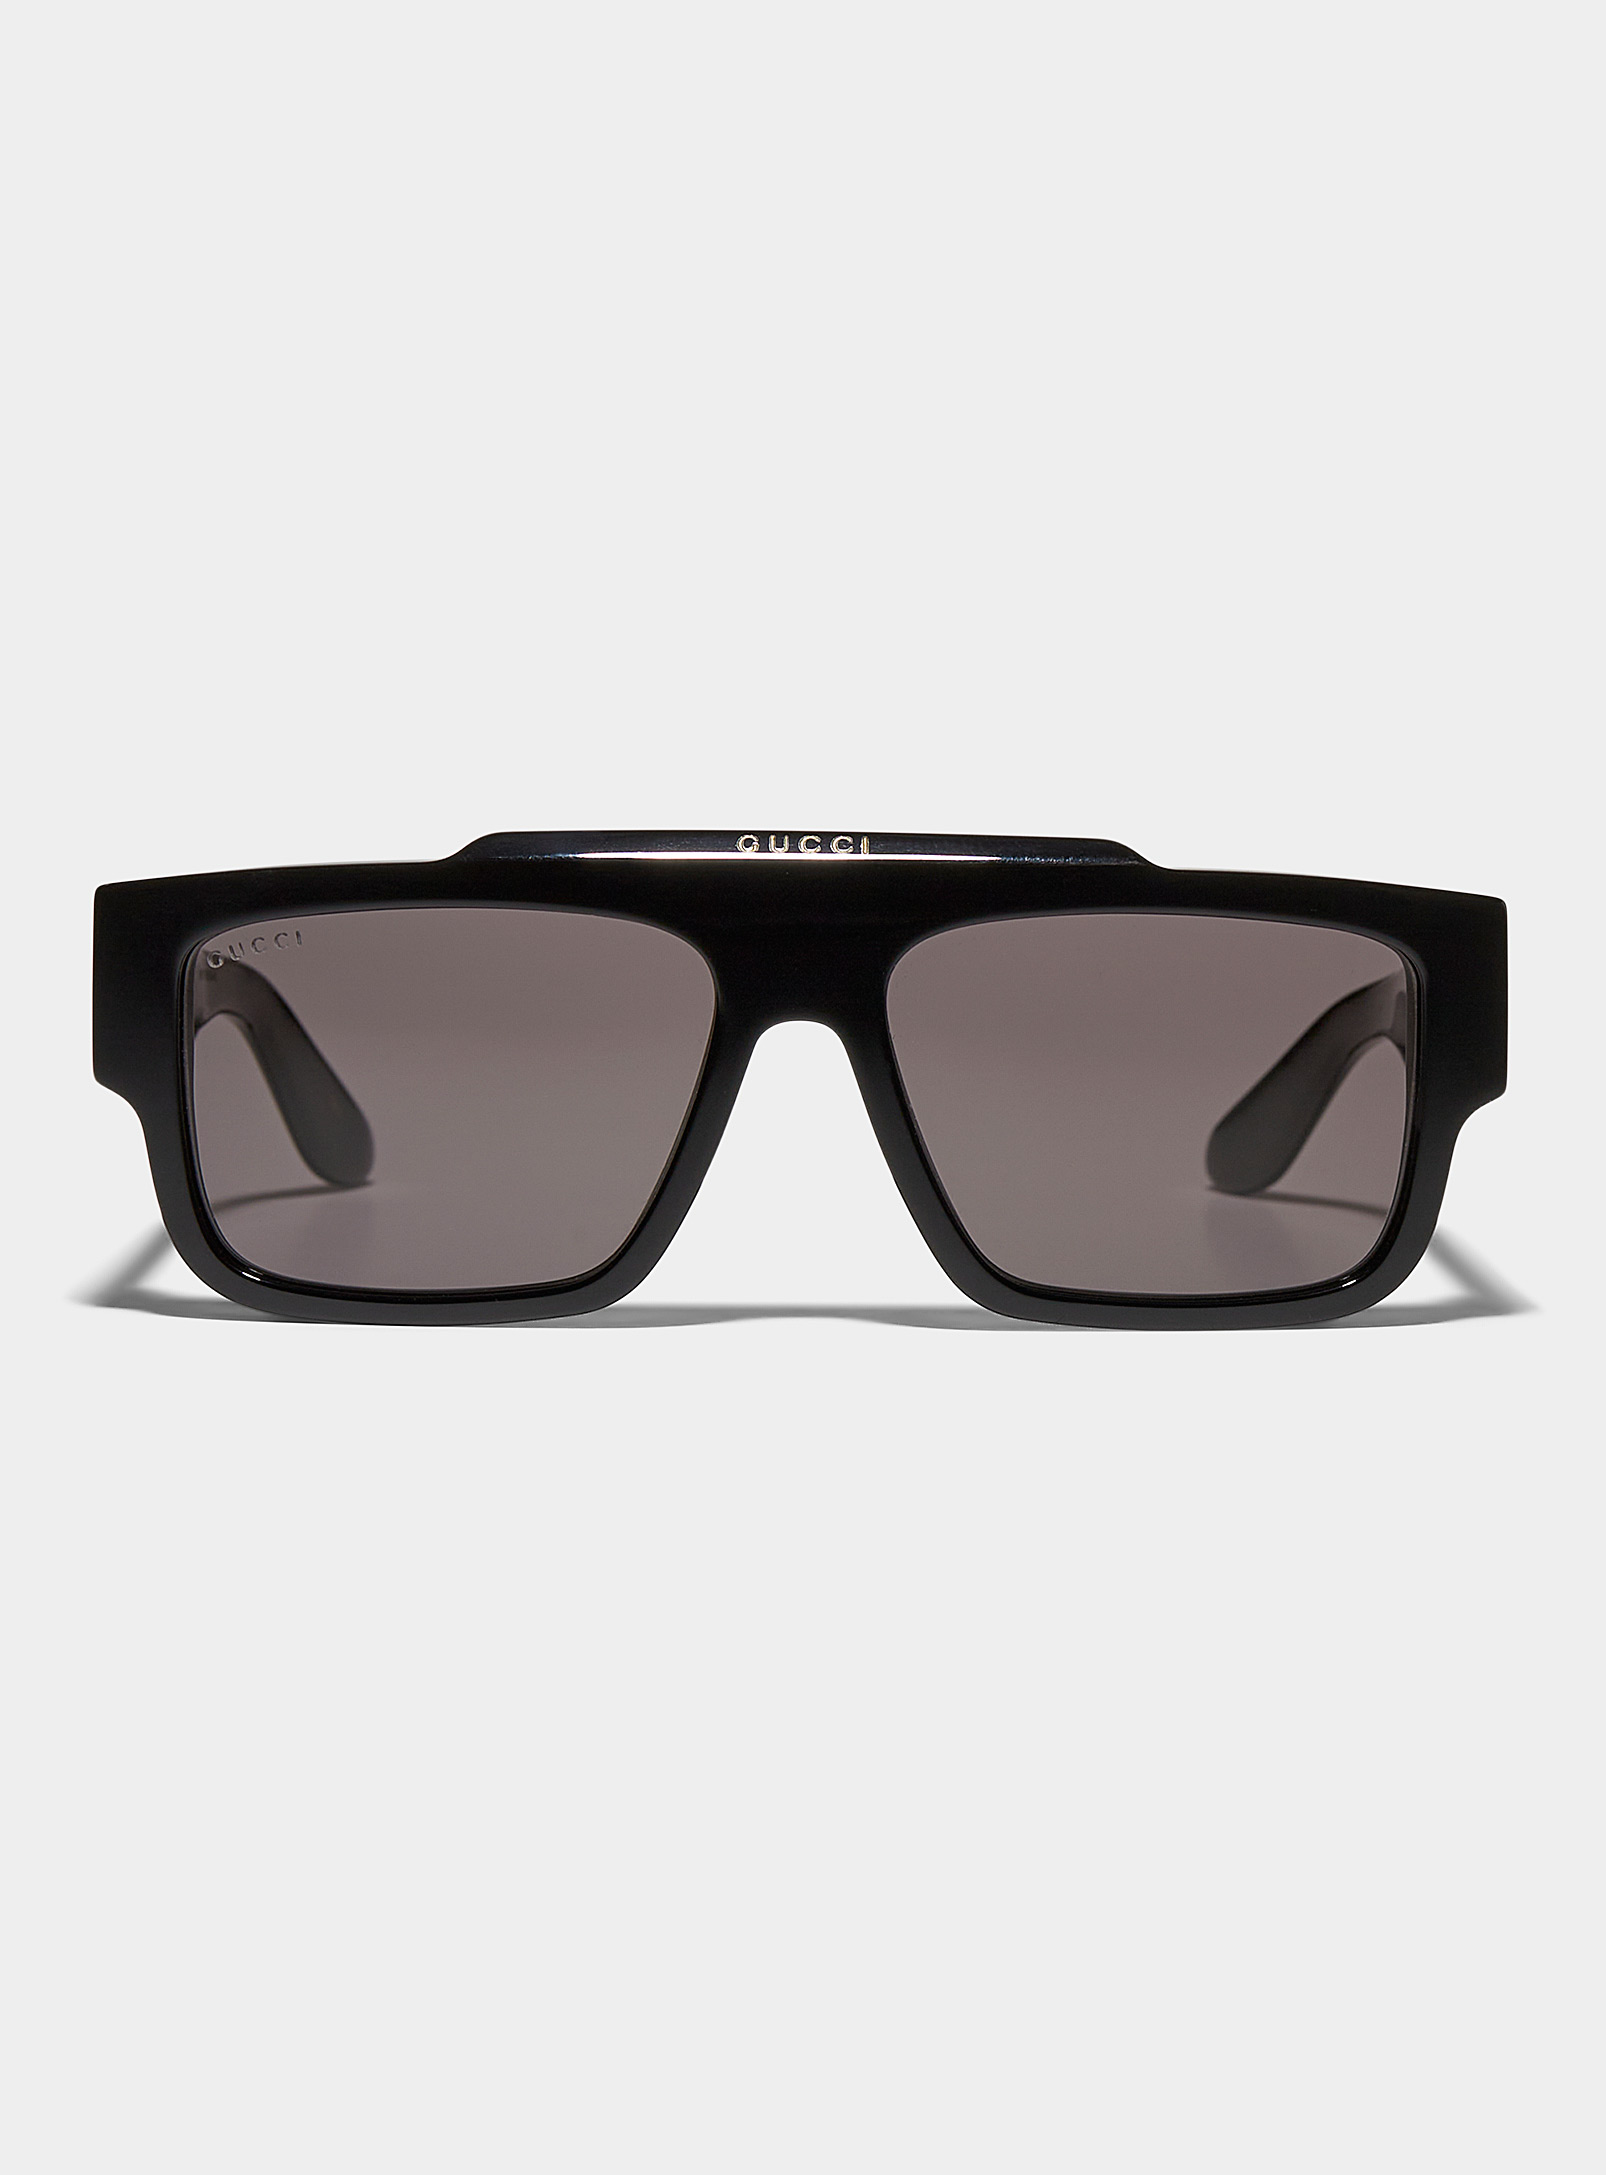 Gucci - Signature bridge rectangular sunglasses